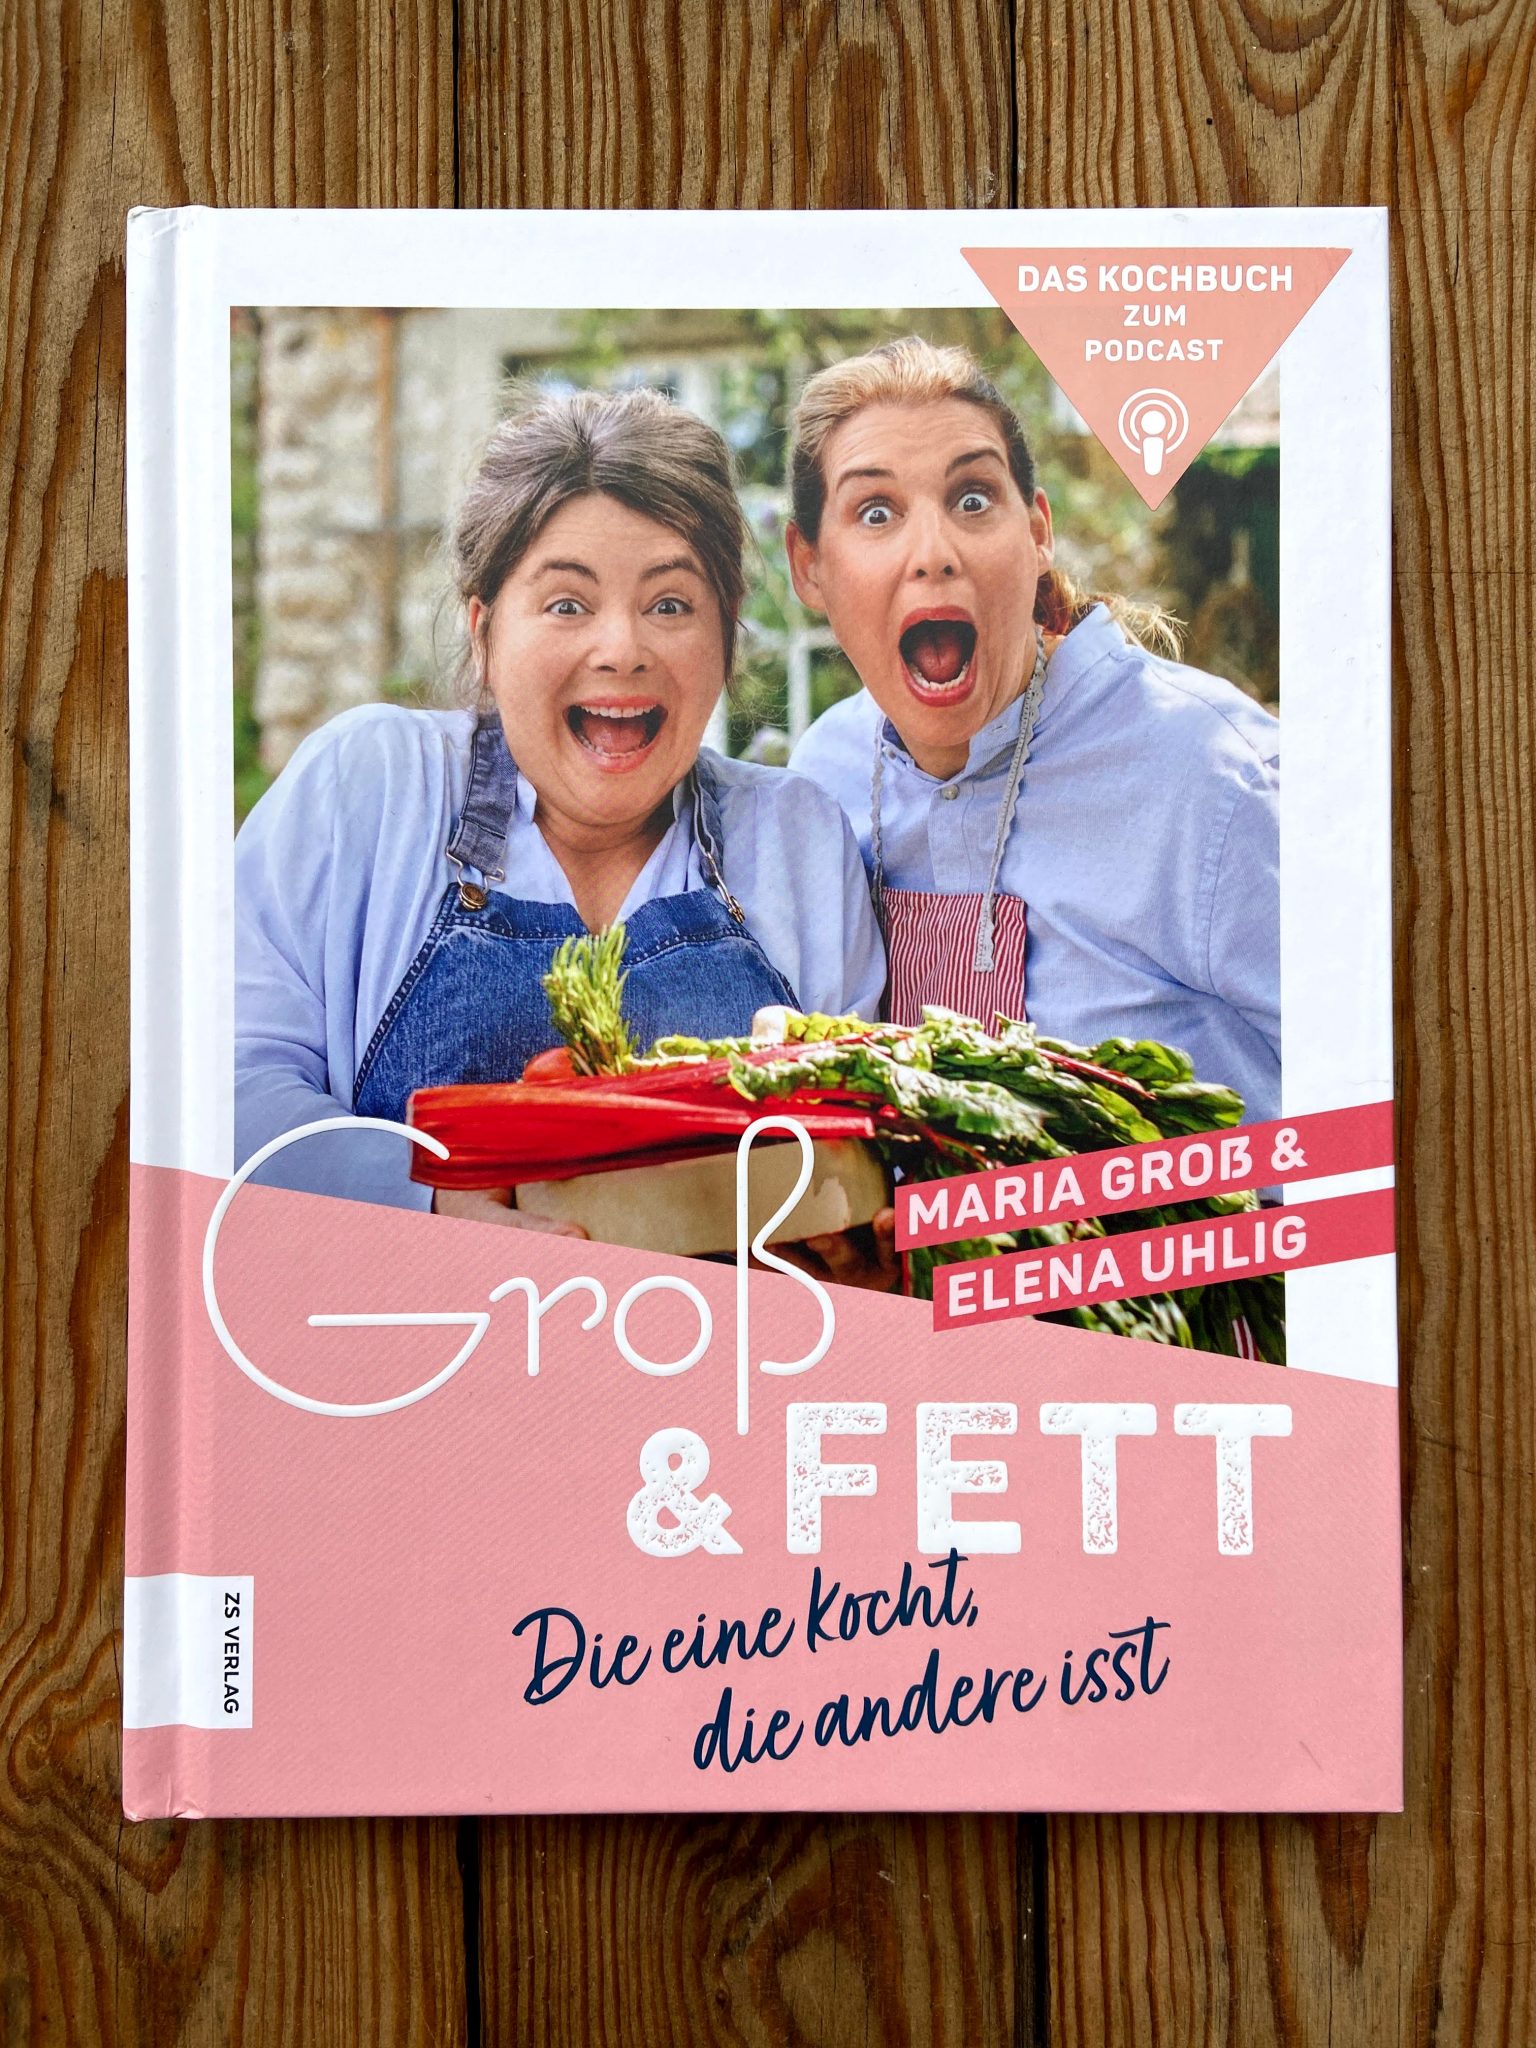 Das Kochbuch zum Podcast: Groß & Fett - Die eine kocht, die andere isst.